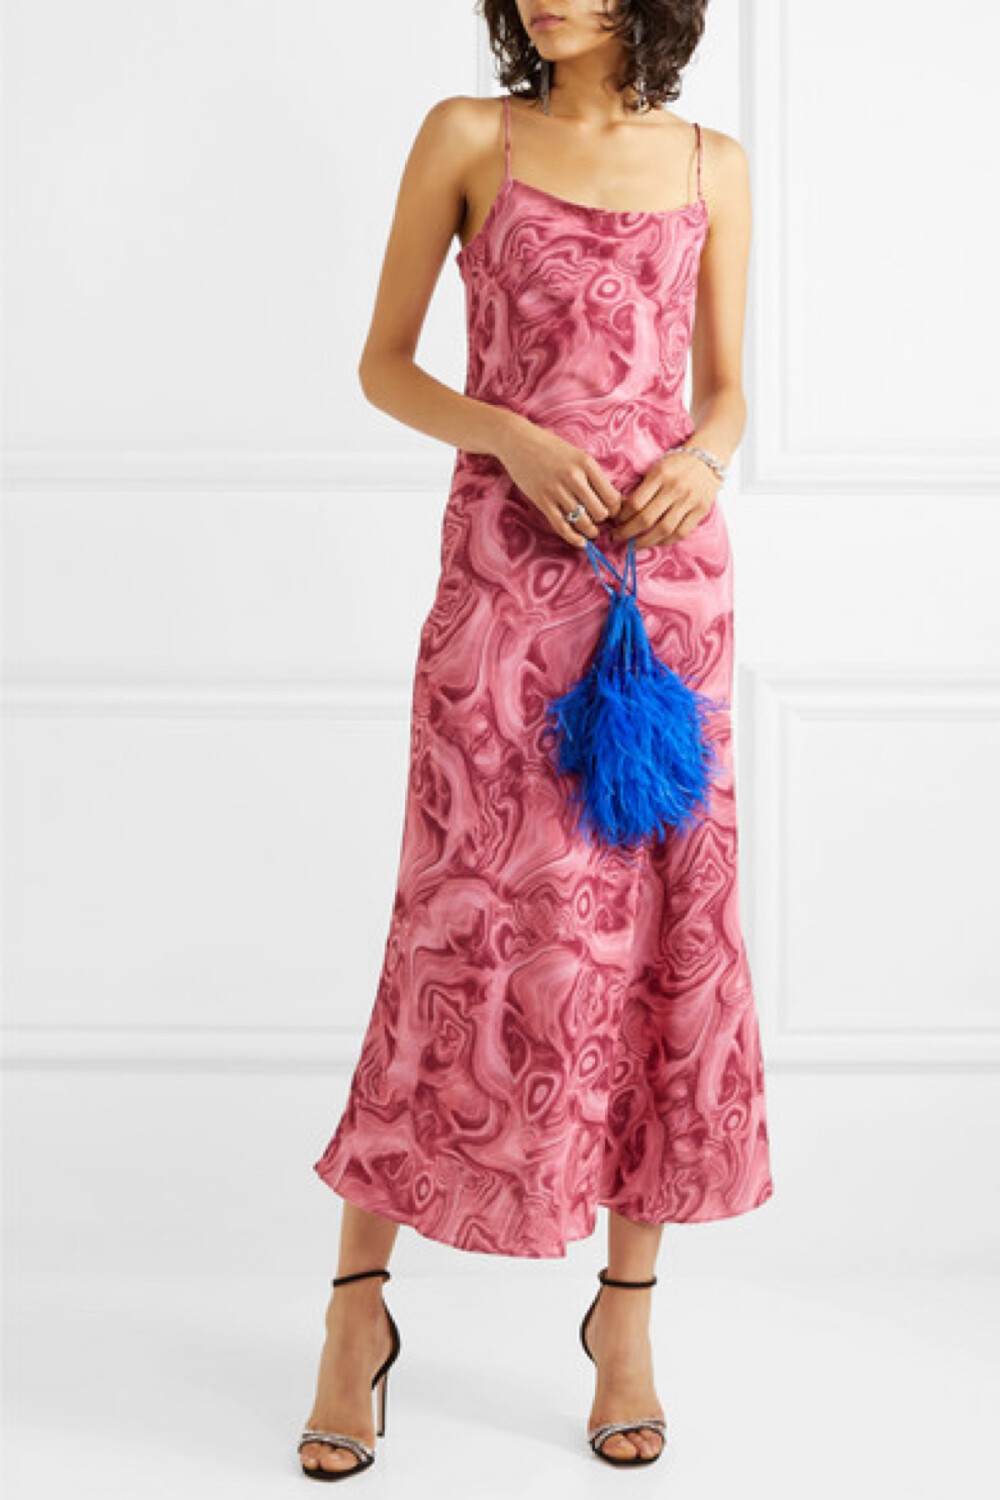 绚丽的色泽，吸睛的印花，这两大元素堪称 16ARLINGTON 2019 秋冬系列的“主打歌”——这款 “Kate” 连衣裙就印有红莓色泽的大理石涡纹，散发出明艳不失甜美的气质，堪称品牌本季的代表佳作。它裁自轻盈的双绉，90 年代风格的吊带裙廓形可勾勒出身材曲线，精致的肩带则把锁骨处修饰得更加优雅。不妨搭配熠闪的高跟鞋和羽毛边饰配饰，高调亮相派对。